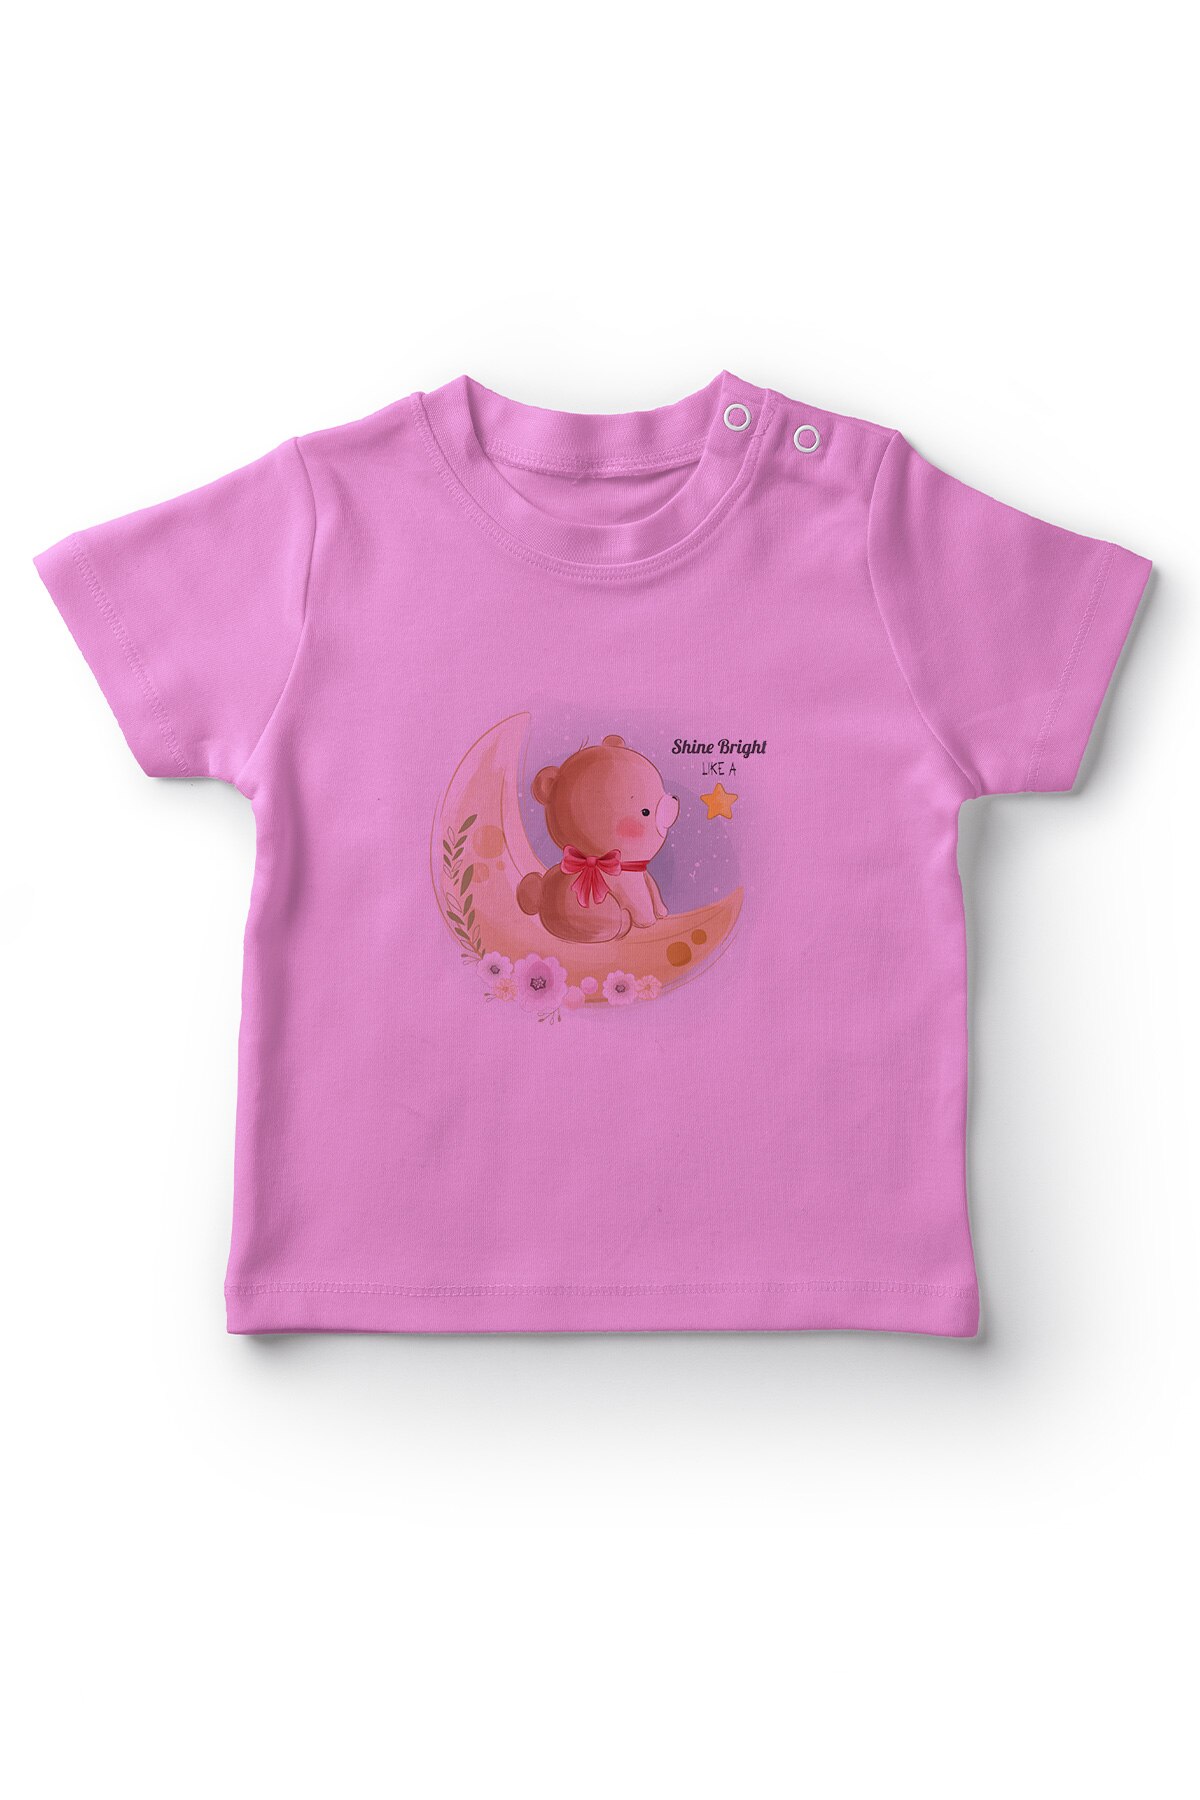 Angemiel Baby Star Shining Als Beer Baby Meisje T-shirt Roze